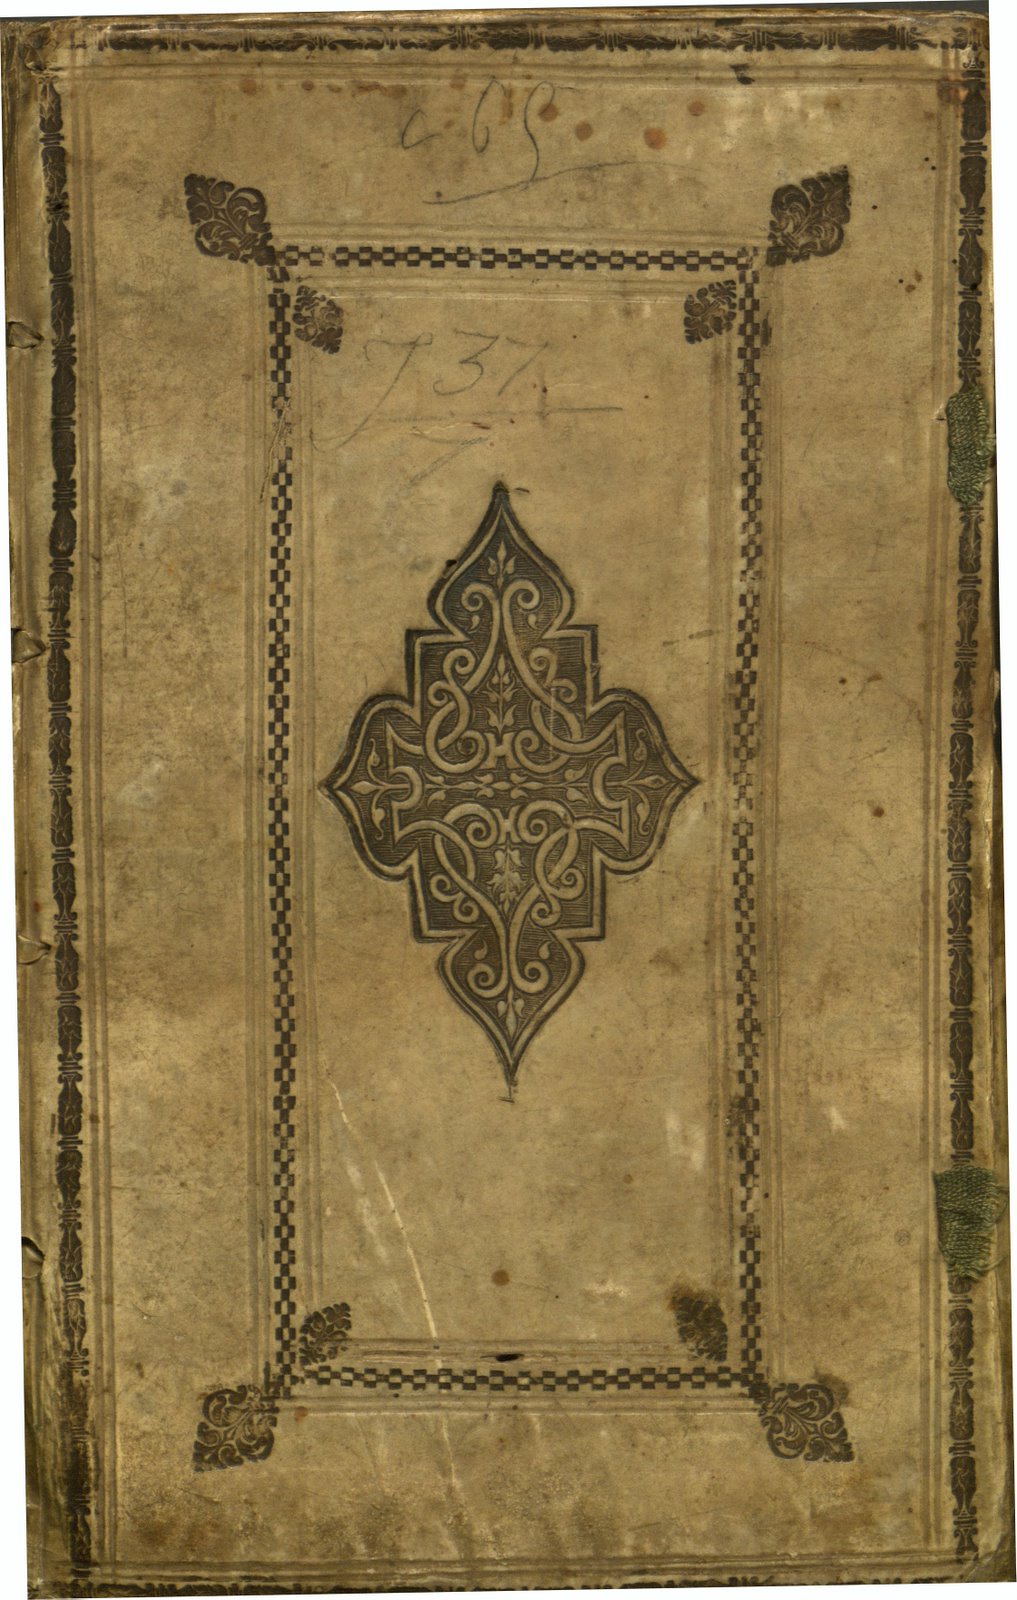 Cover of the Senenus folio